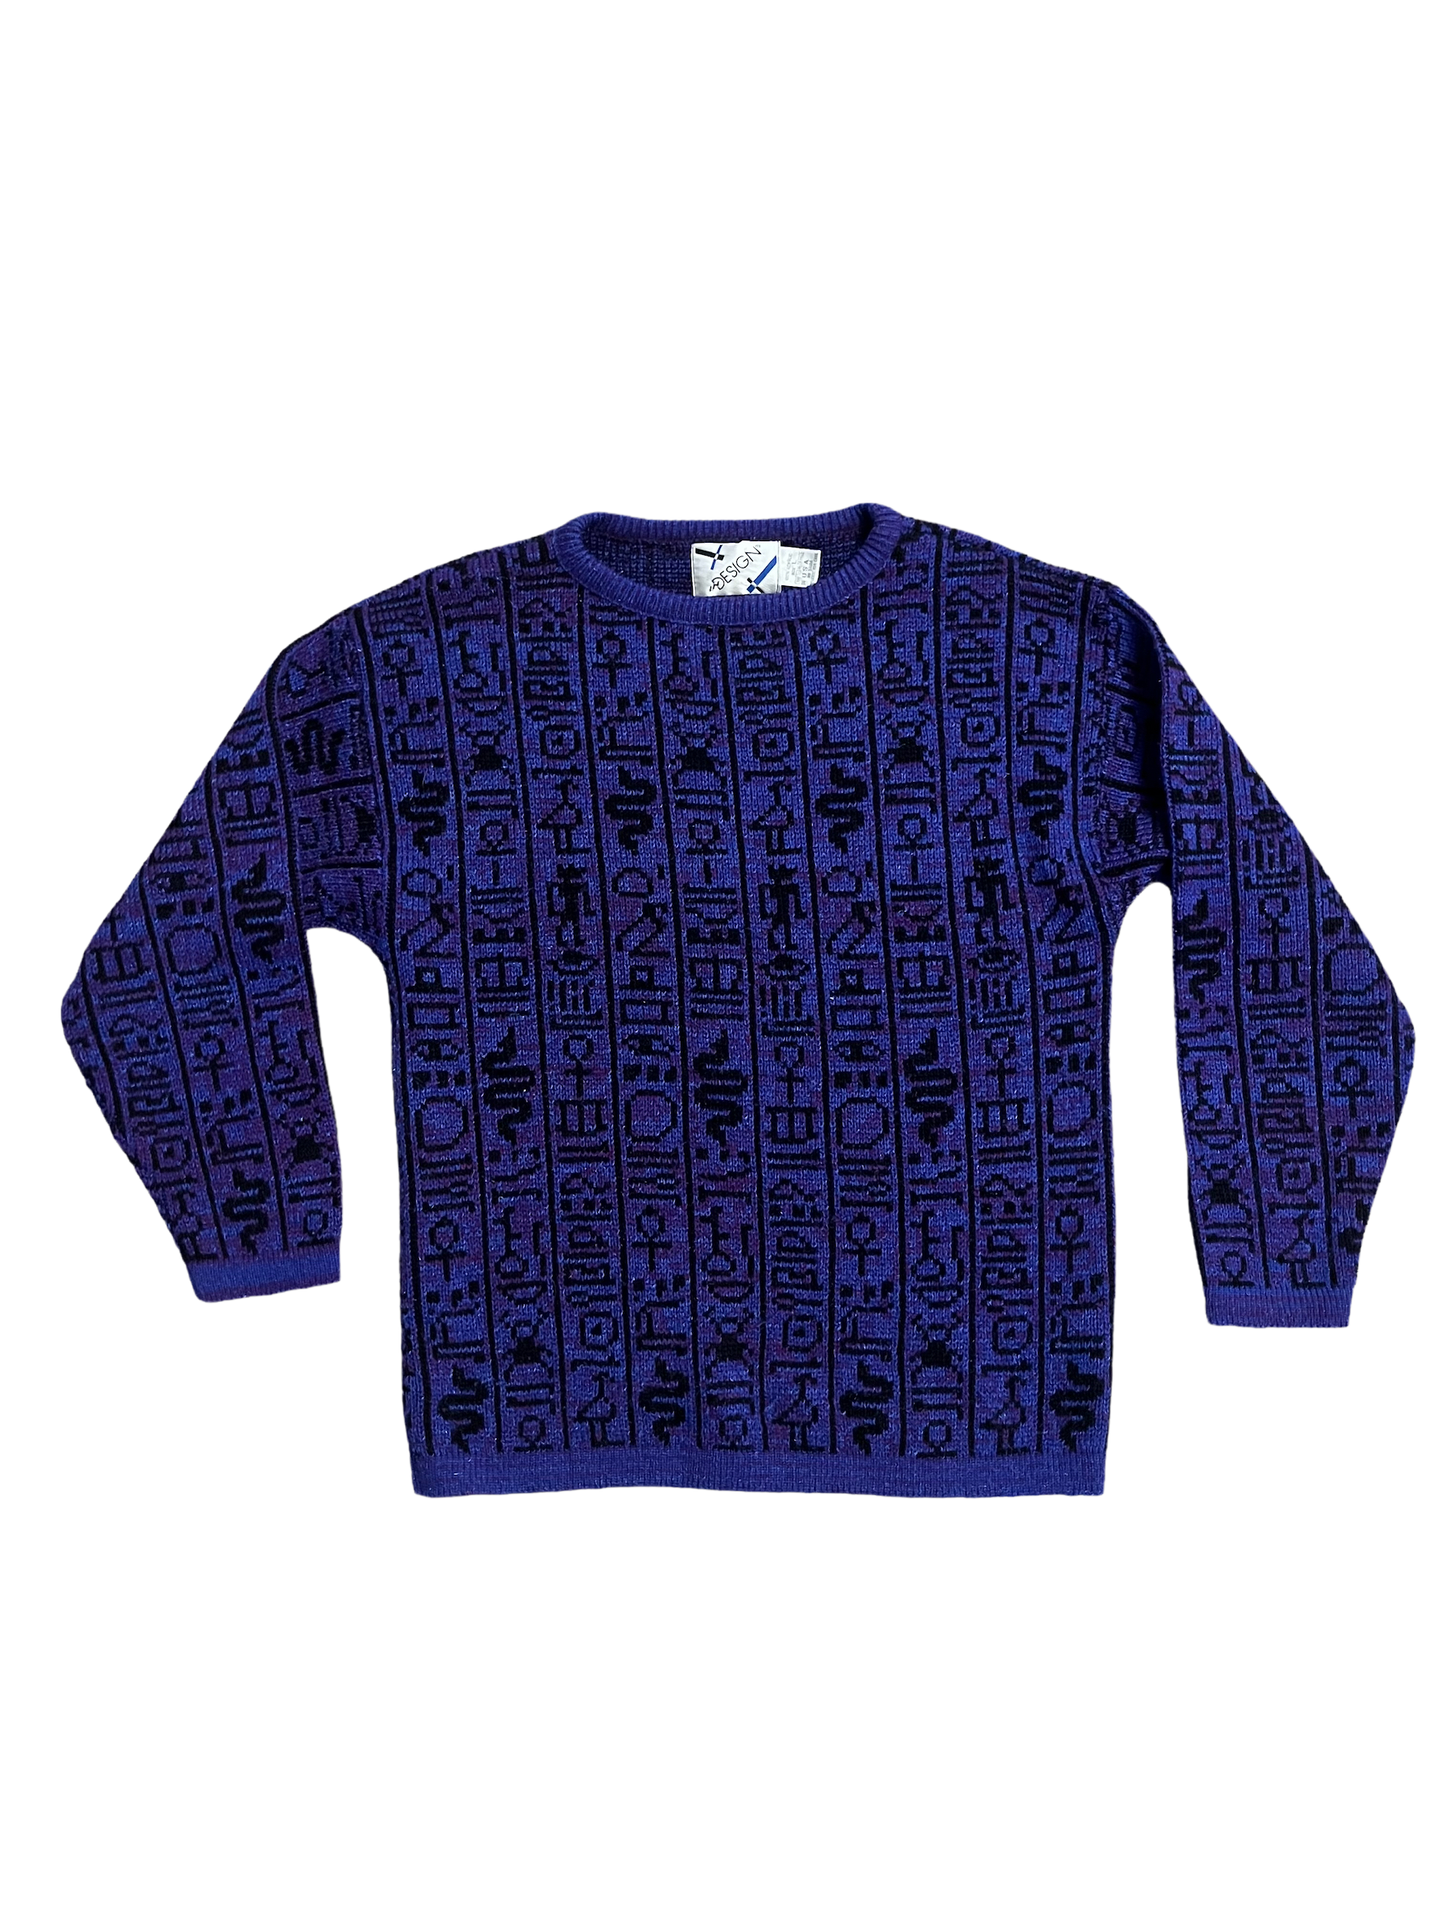 Hieroglyphics Knit Sweater